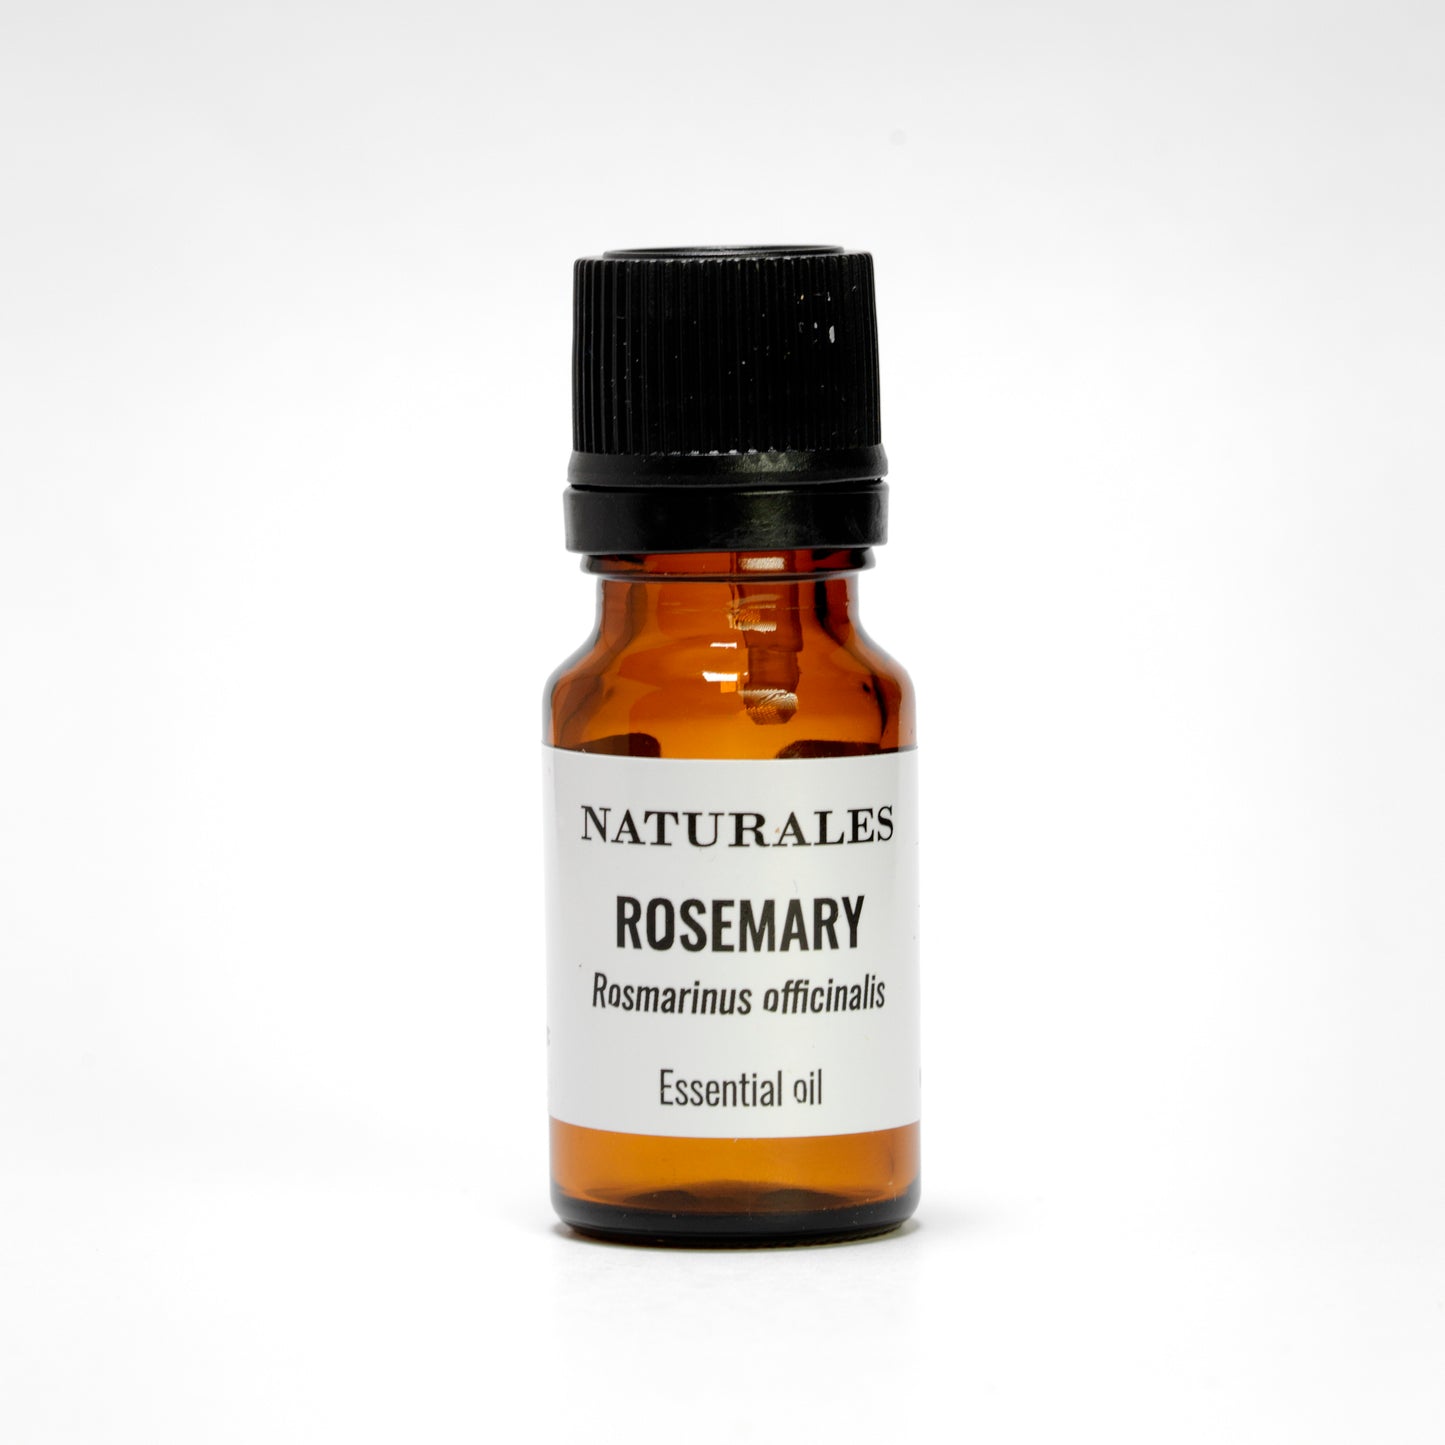 ROSEMARY Rosmarinus officinalis 10 ml.